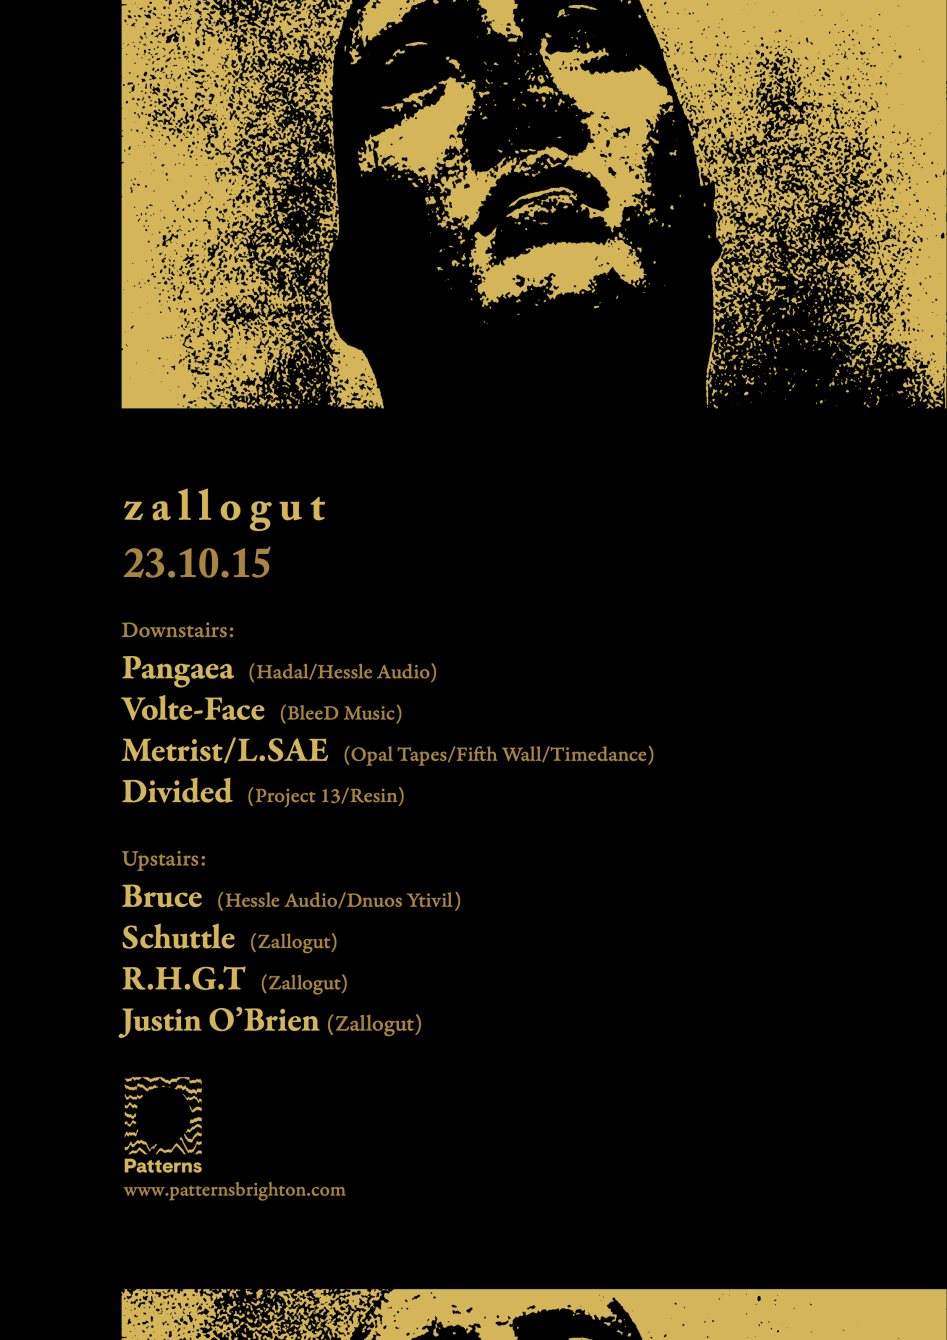 Zallogut with Pangaea, Volte-Face & Metrist - フライヤー表